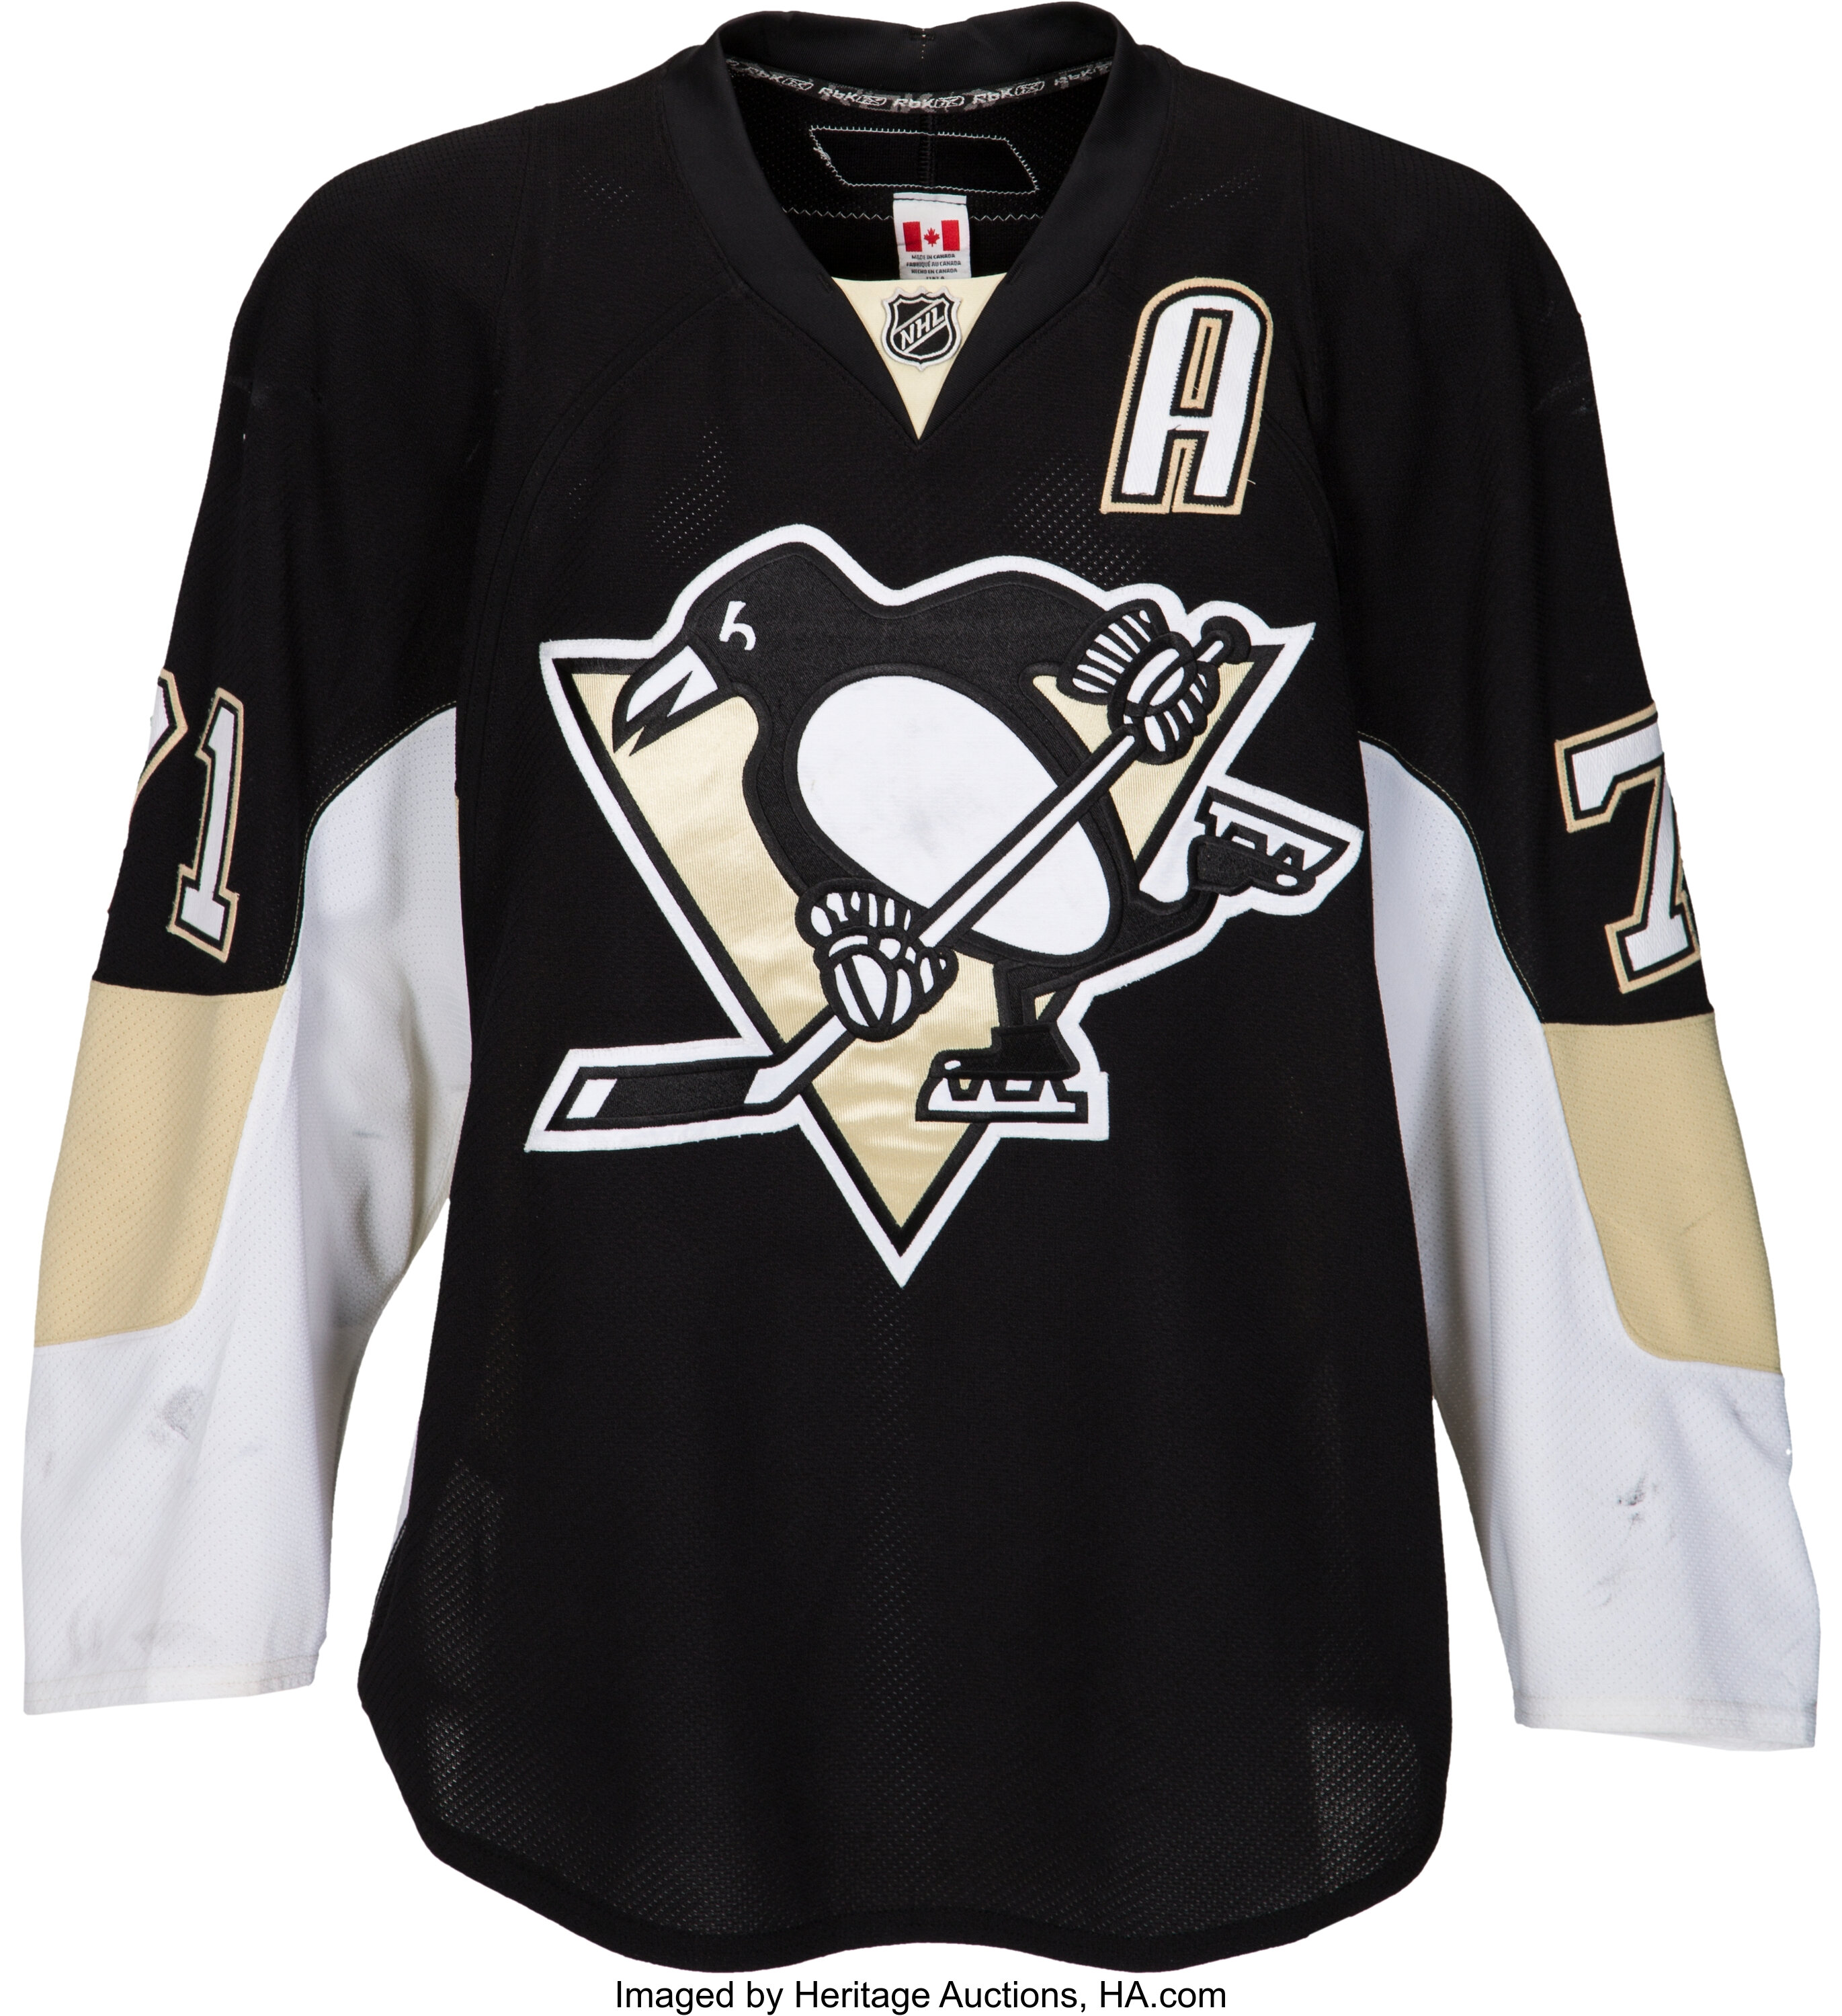 2009-10 Pittsburgh Penguins Alternate Set Game Worn Jerseys